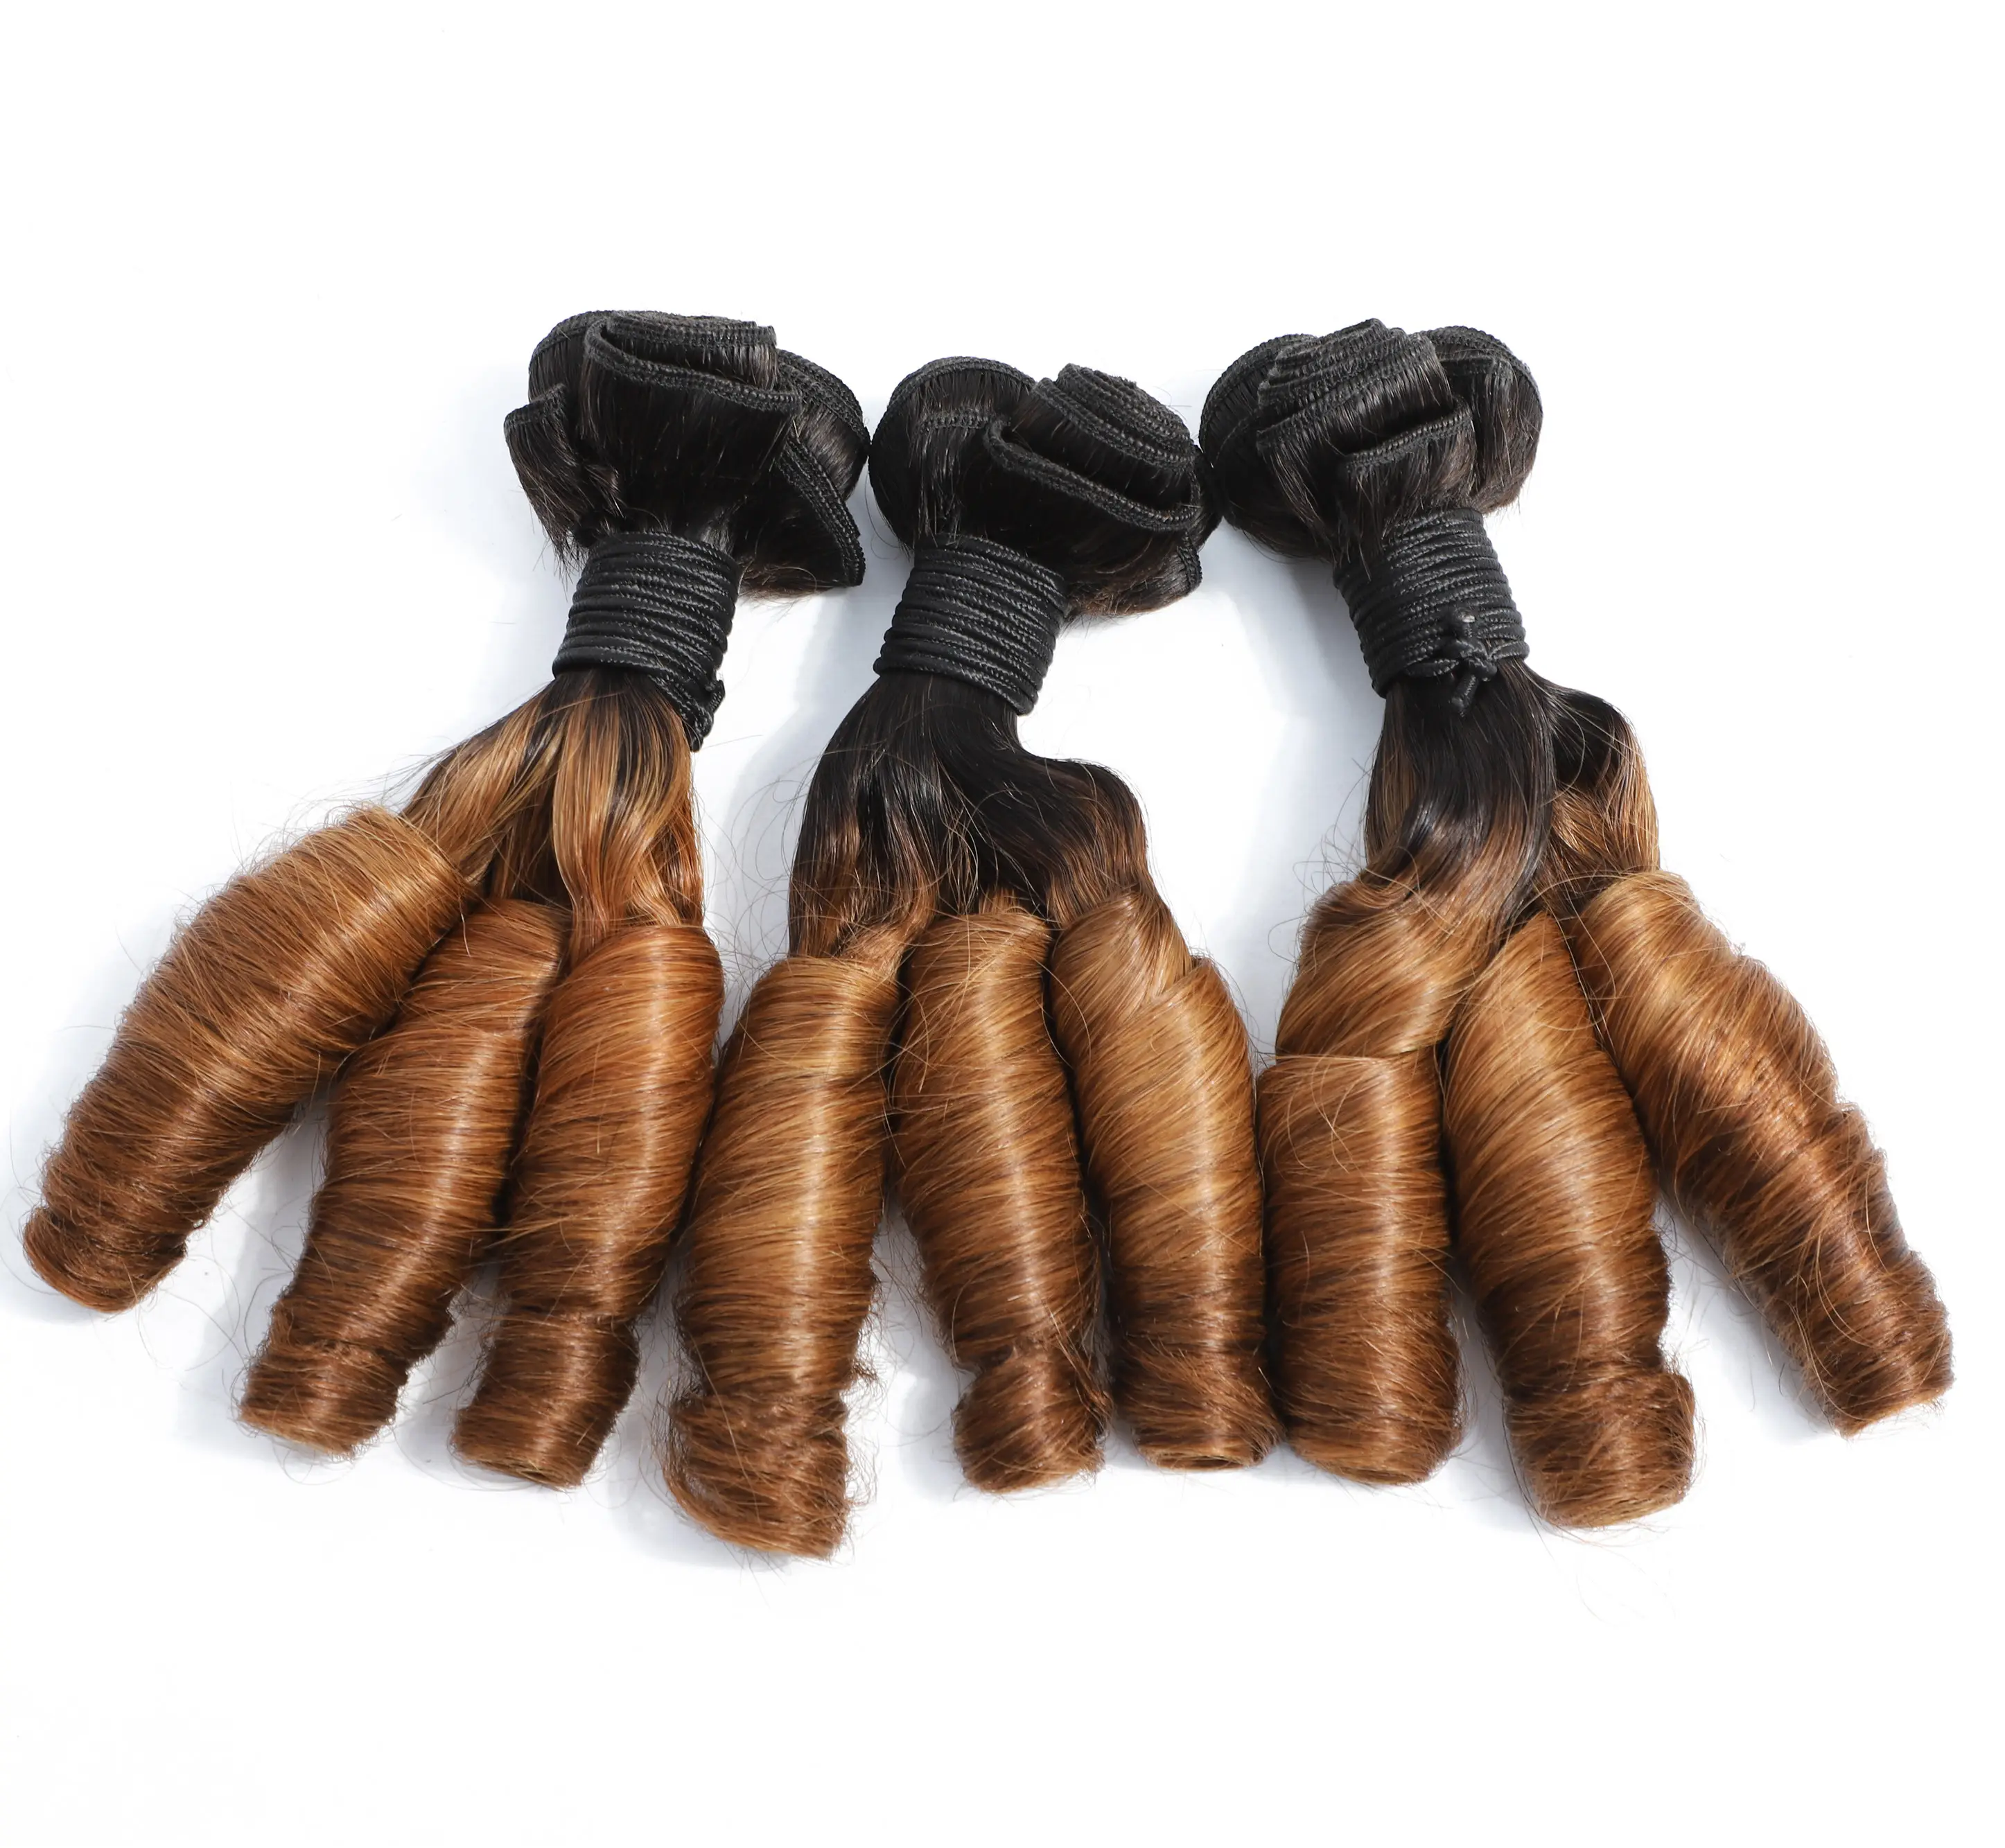 Mayqueen extensões de cabelo, 1b/30 brasileiro remy de cabelo humano encaracolado pacotes de extensões